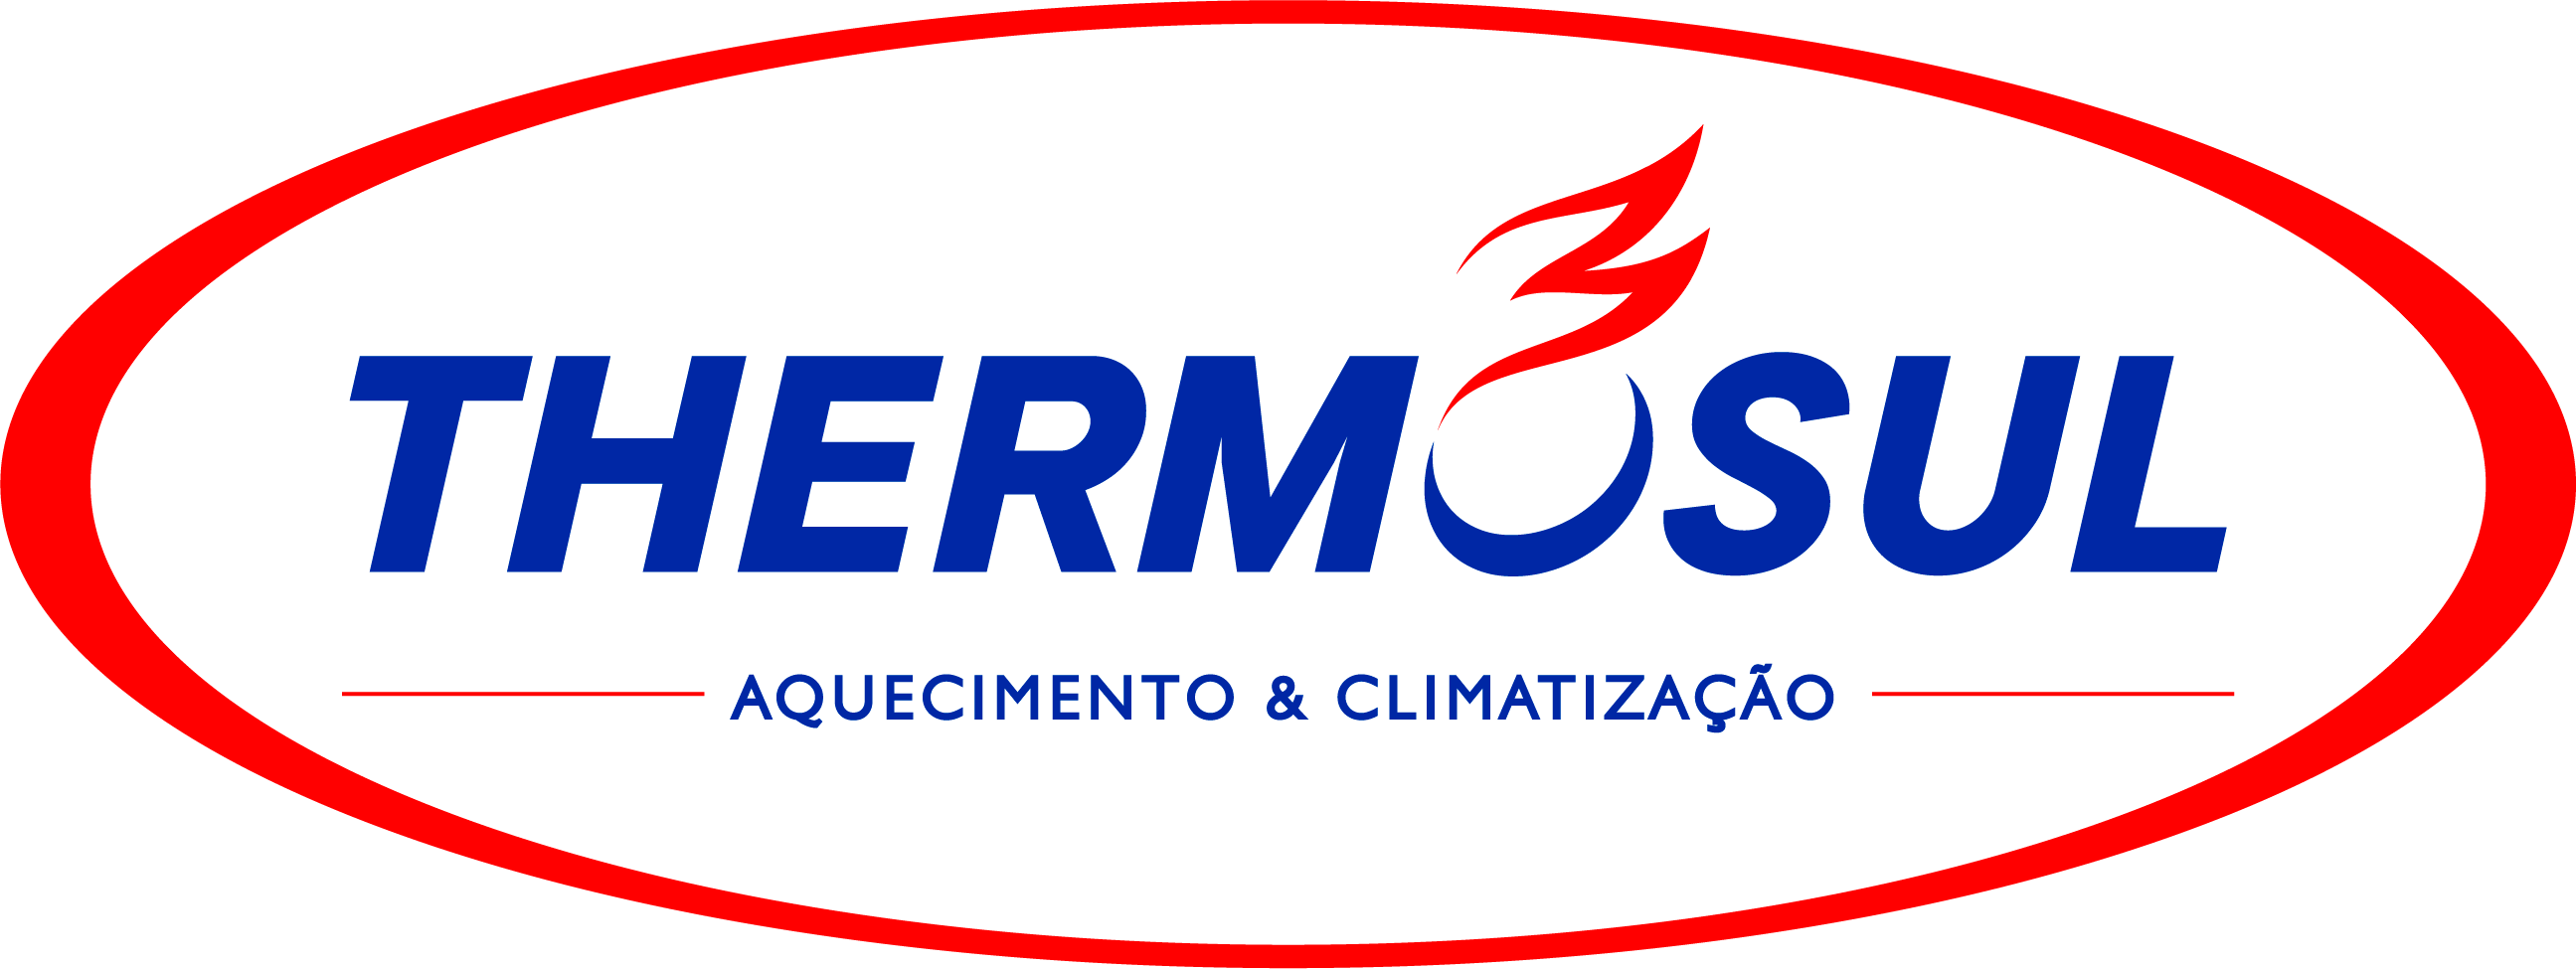 (c) Thermosul.com.br